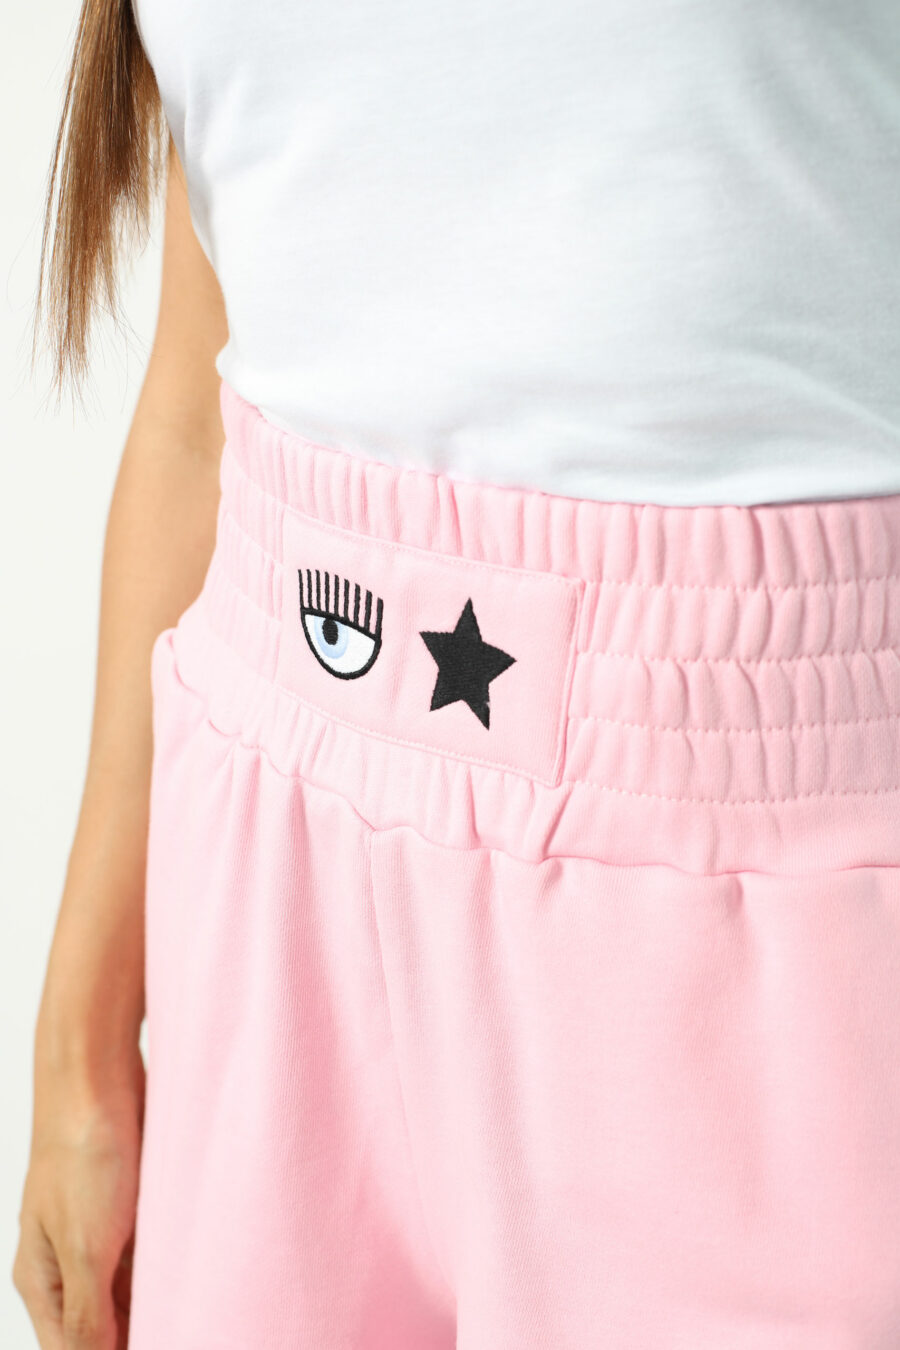 Pantalón de chándal rosa corto con logo ojo y estrella - Photos 2625